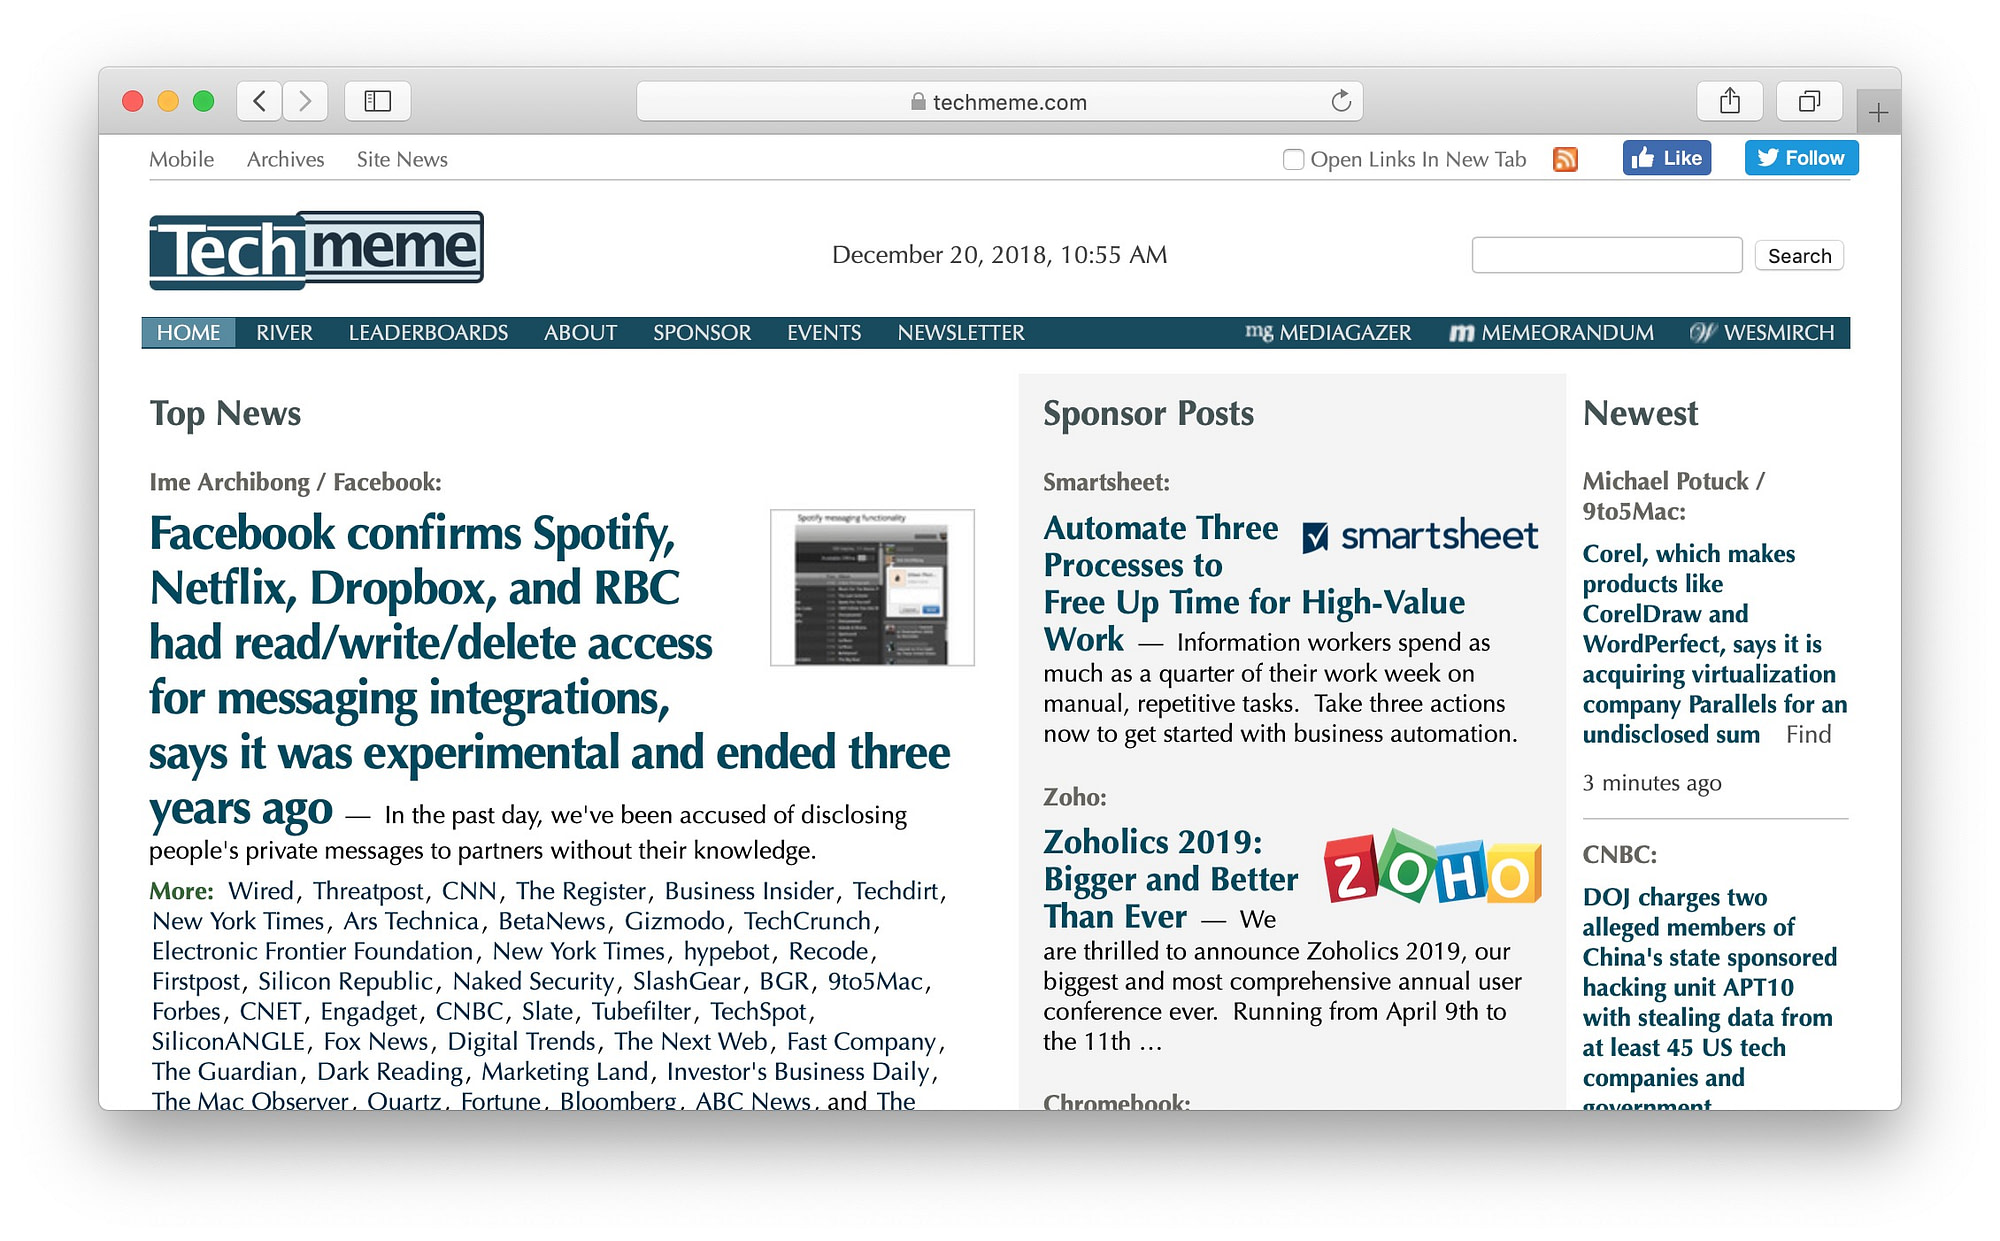 Trang đầu của trình tổng hợp nội dung TechMeme